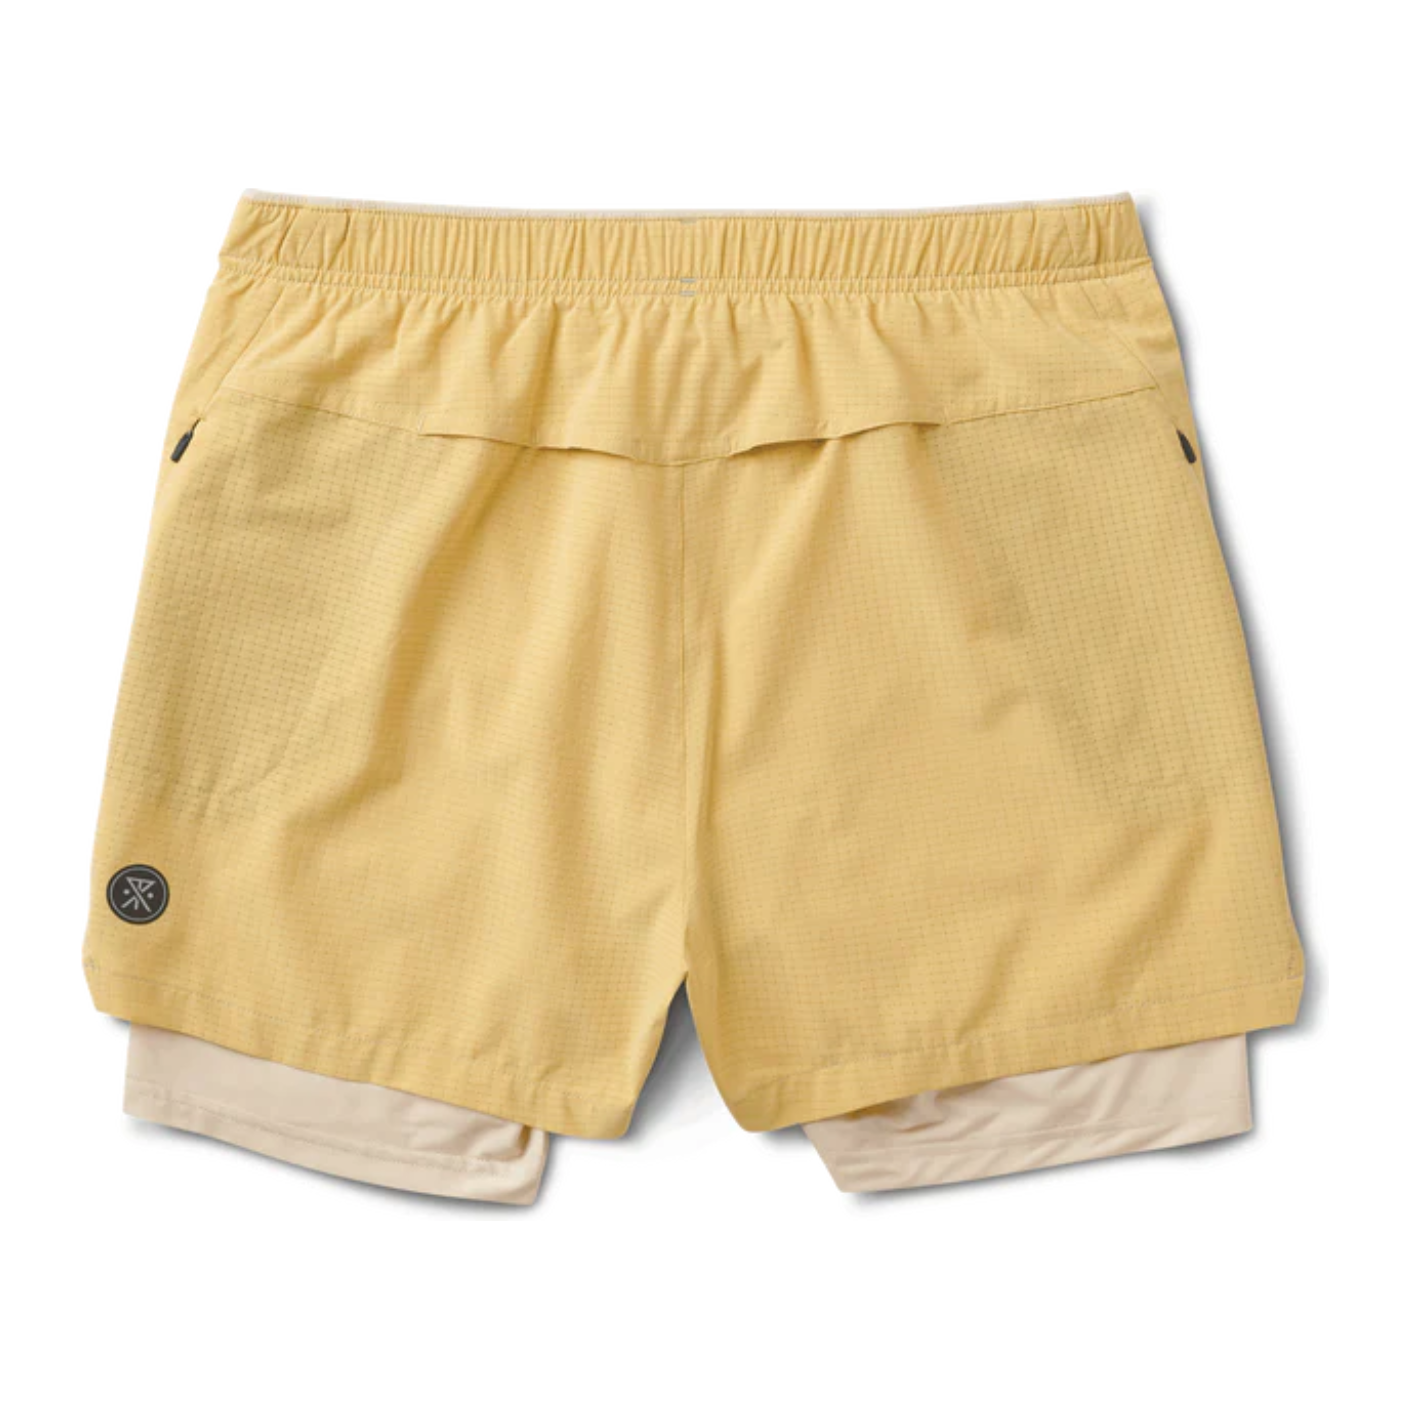 Shorts Bommer 3.5 "pour Hommes||Bommer Shorts 3.5 " for Men's